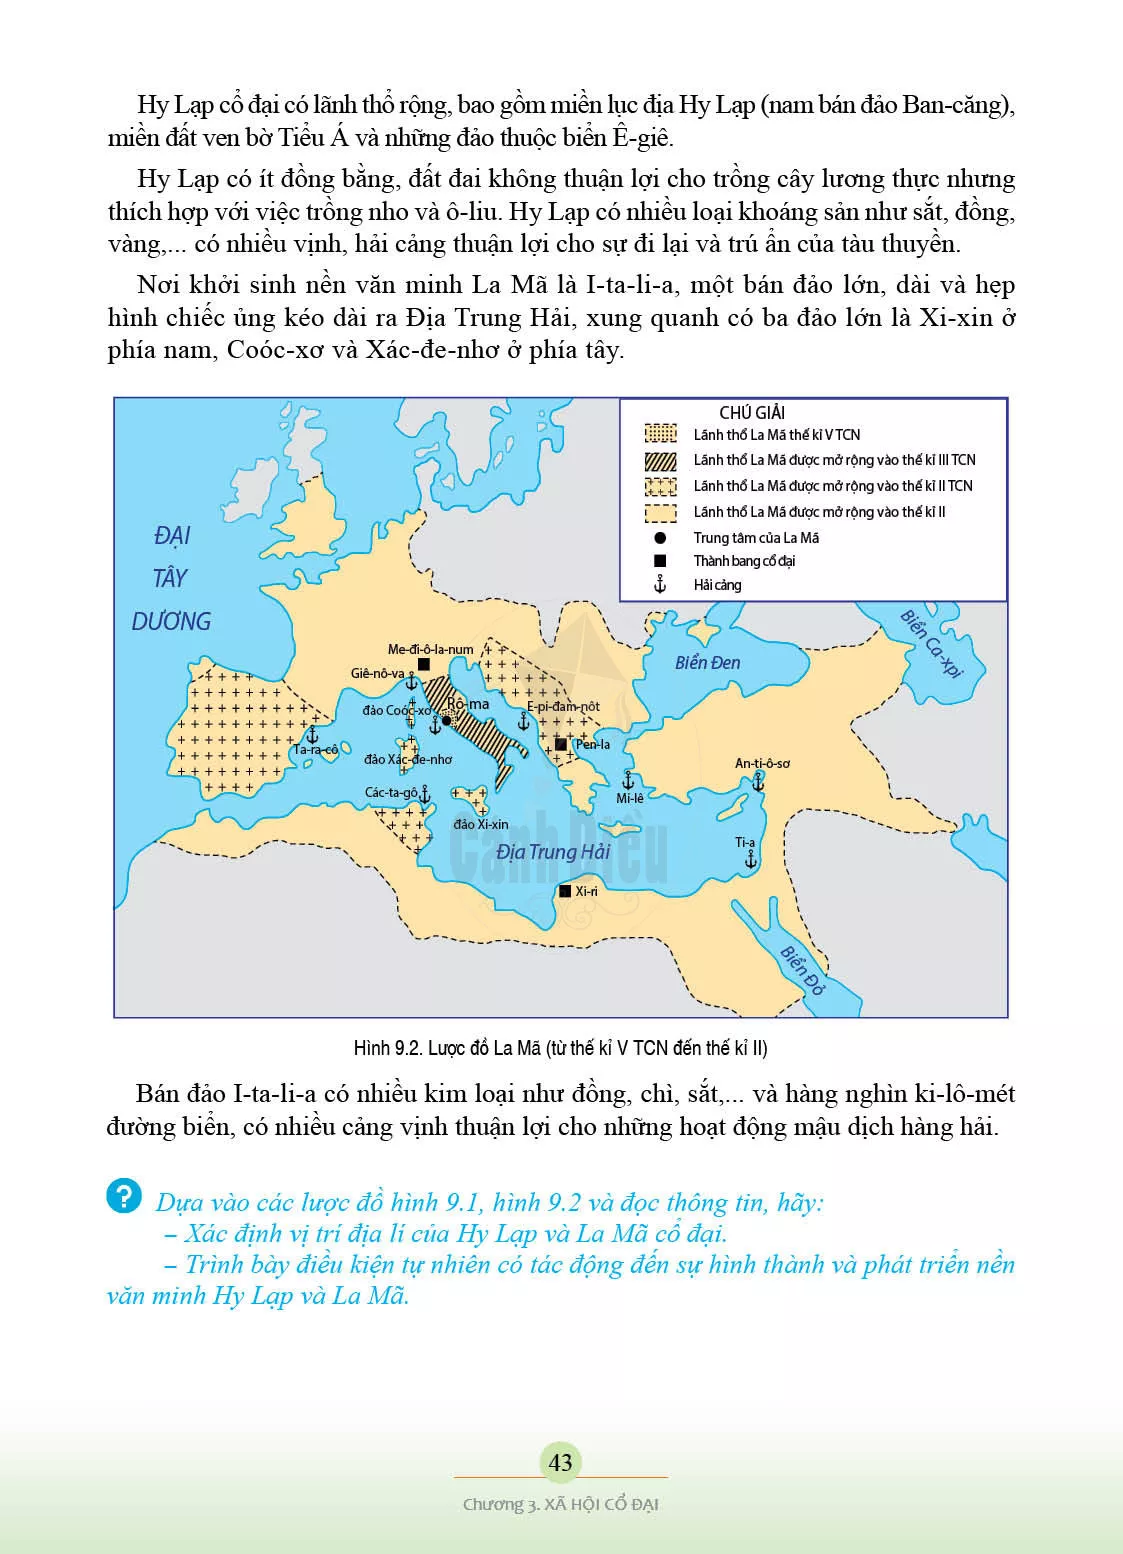 Bài 9. Hy Lạp và La Mã cổ đại